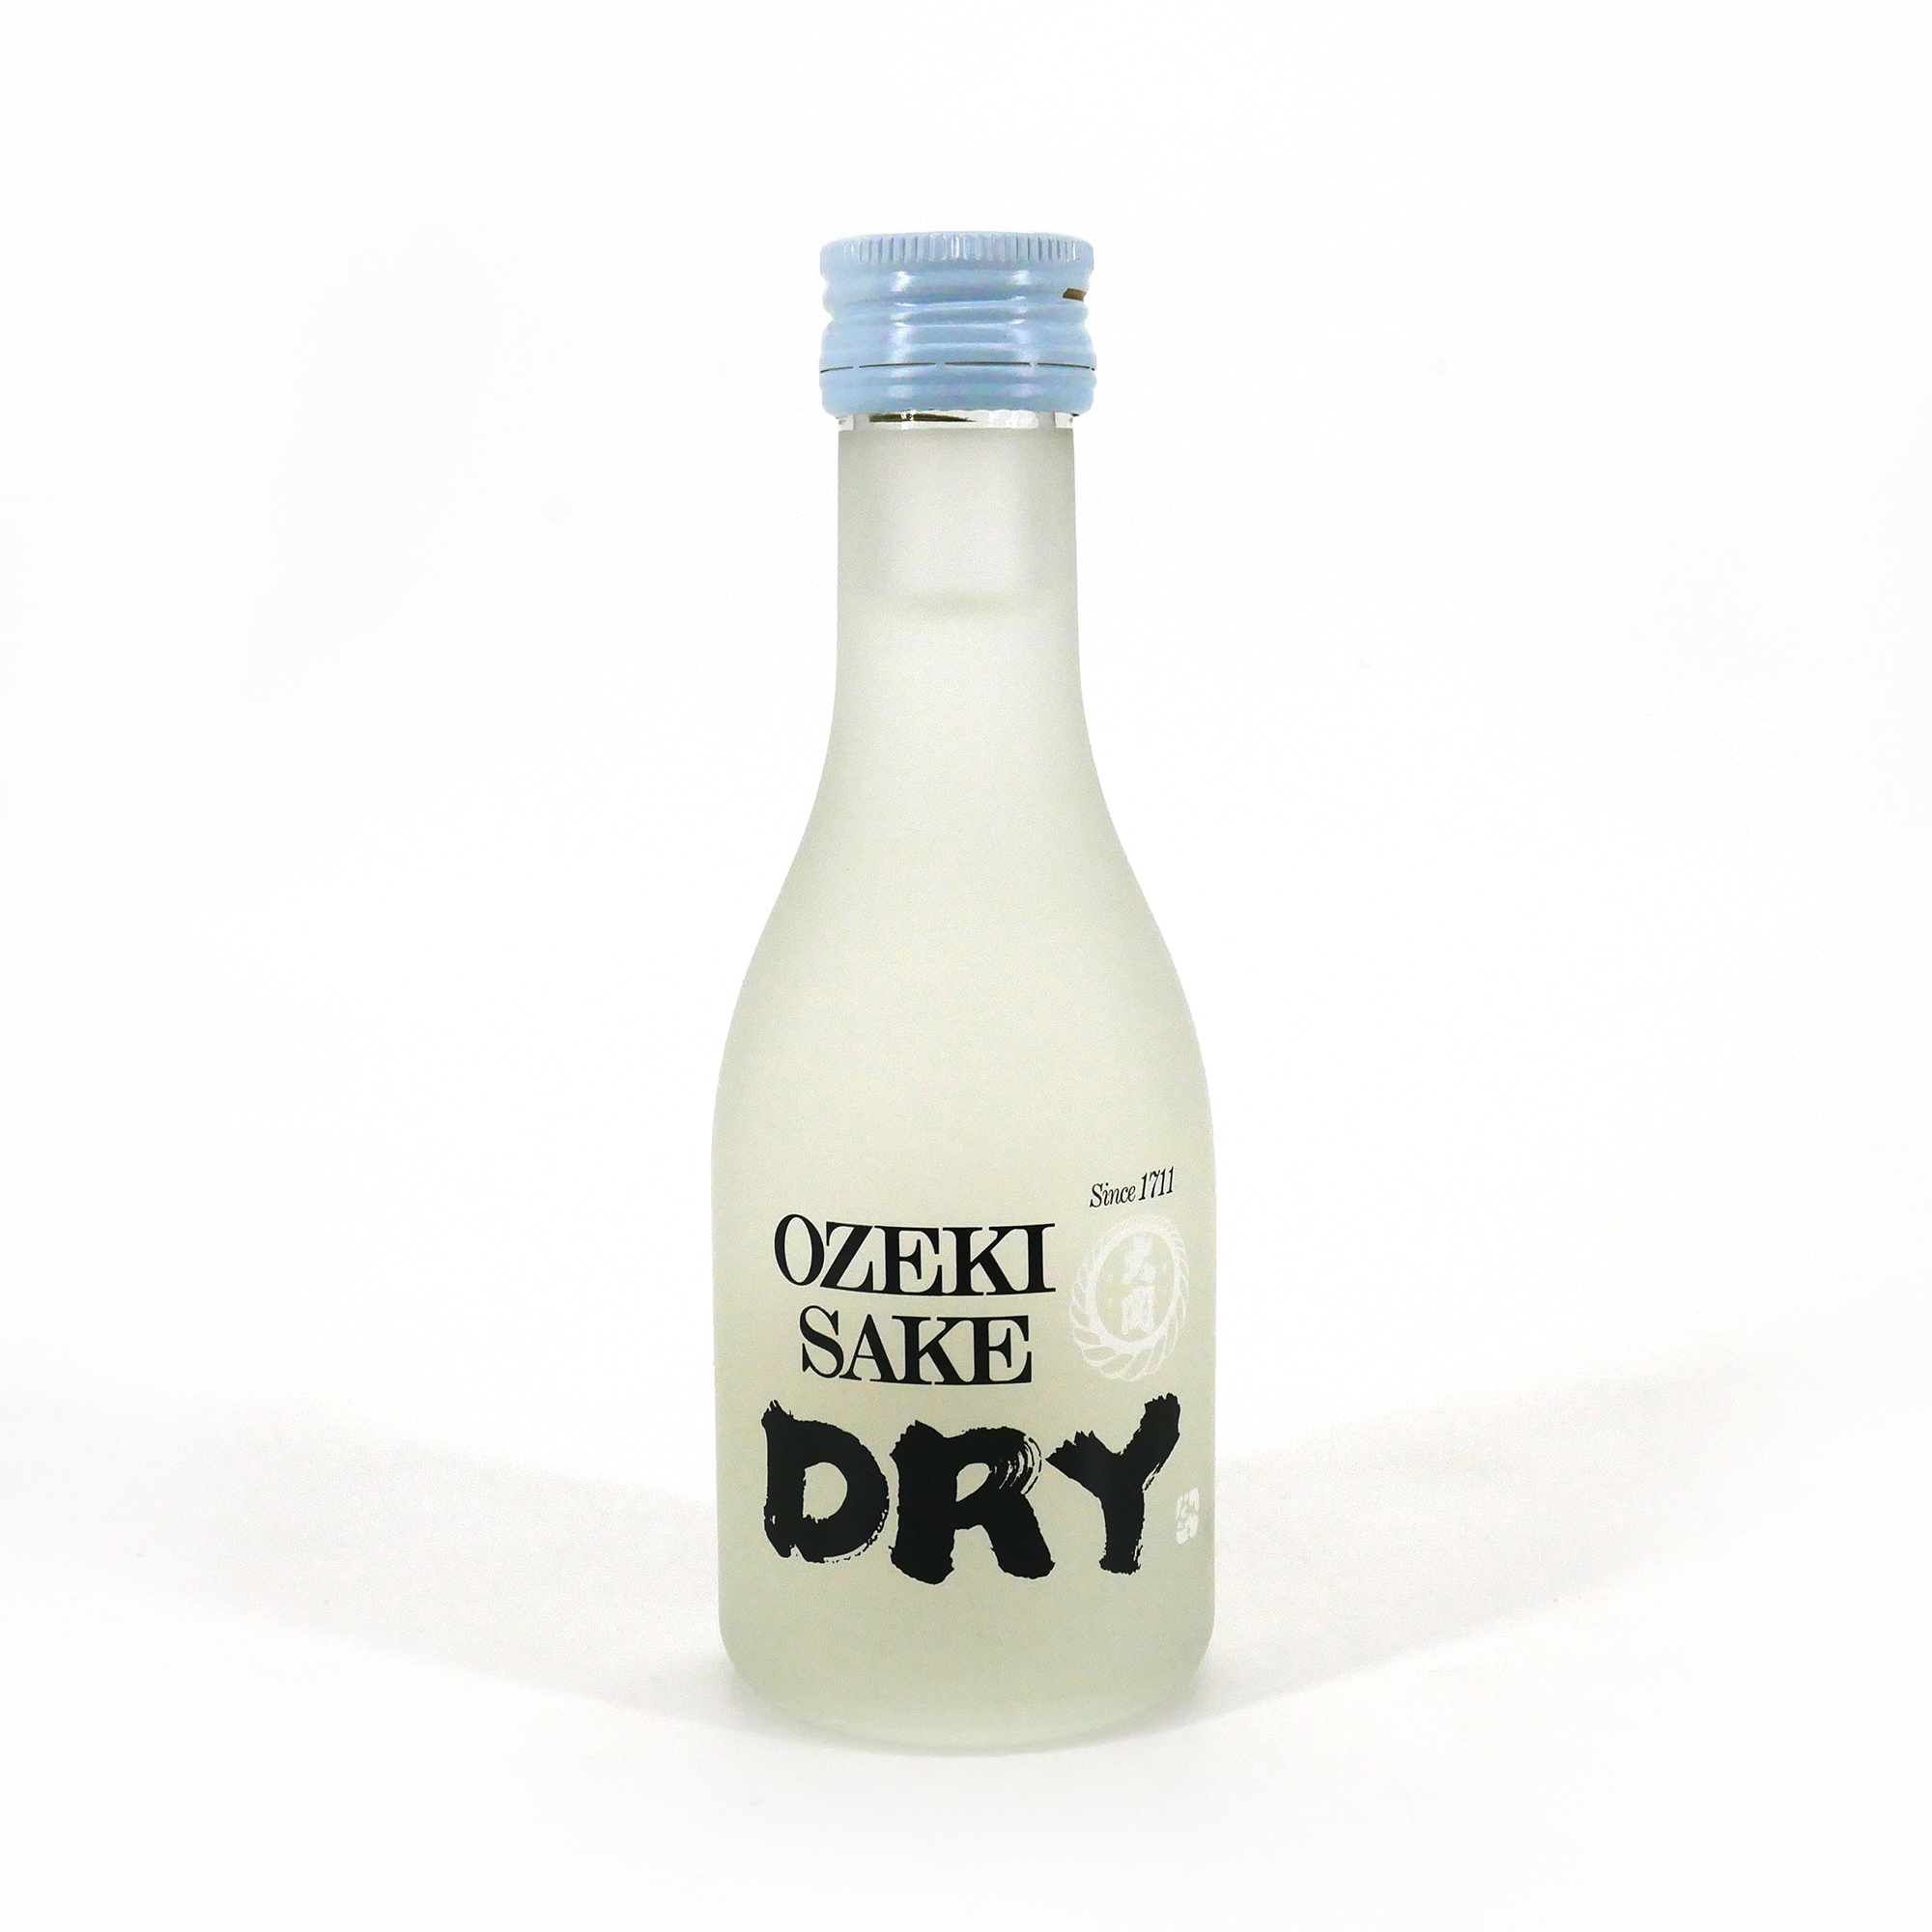 saké japonais OZEKI SAKE DRY alc 14.5% - 180ml